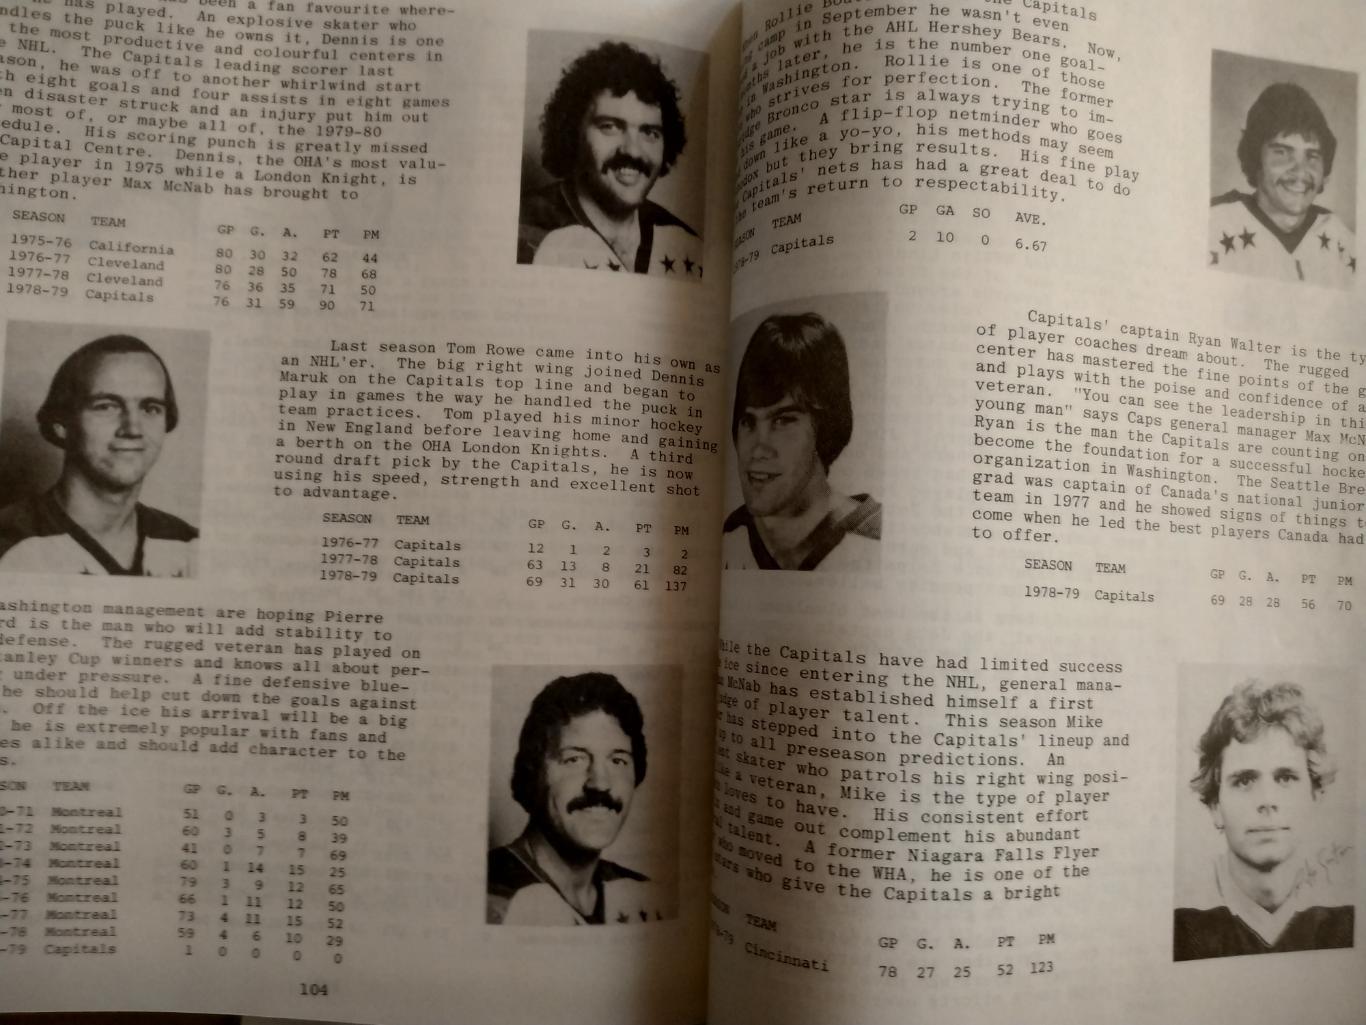 ХОККЕЙ СПРАВОЧНИК ЕЖЕГОДНИК НХЛ КЛАССИК 1979-80 HOCKEY CLASSIC MIDSEASON REVIEW 6